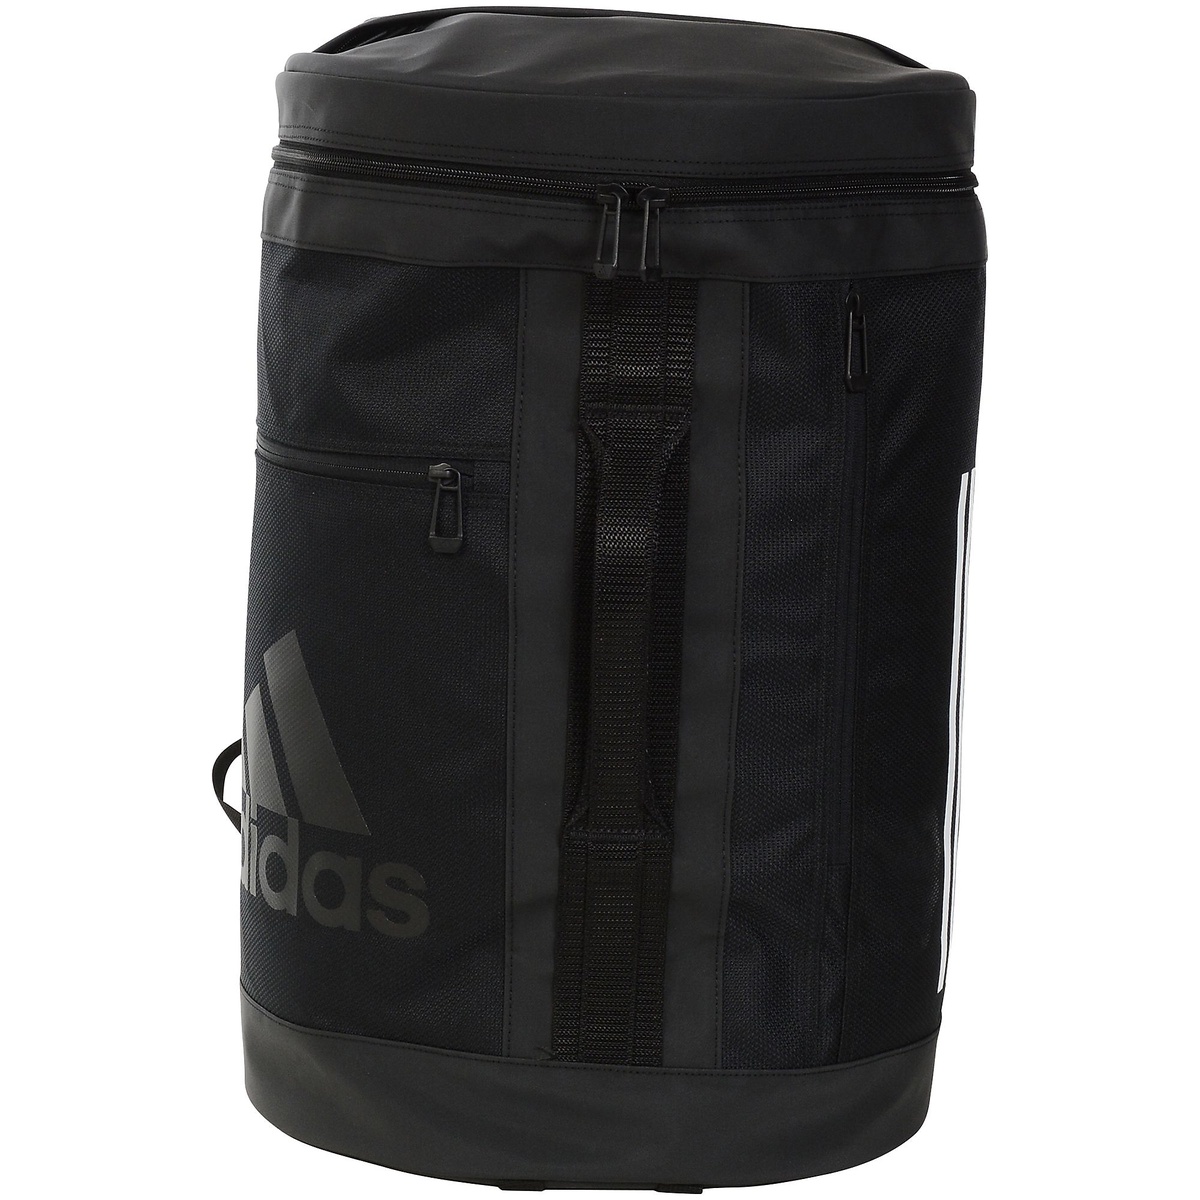 アディダス スポーツアクセサリー バッグパック エンデュランス 【税込】 パッキング システム 人気大割引 バックパック Endurance NS Packing adidas 17772 GN8857 ブラック Backpack System